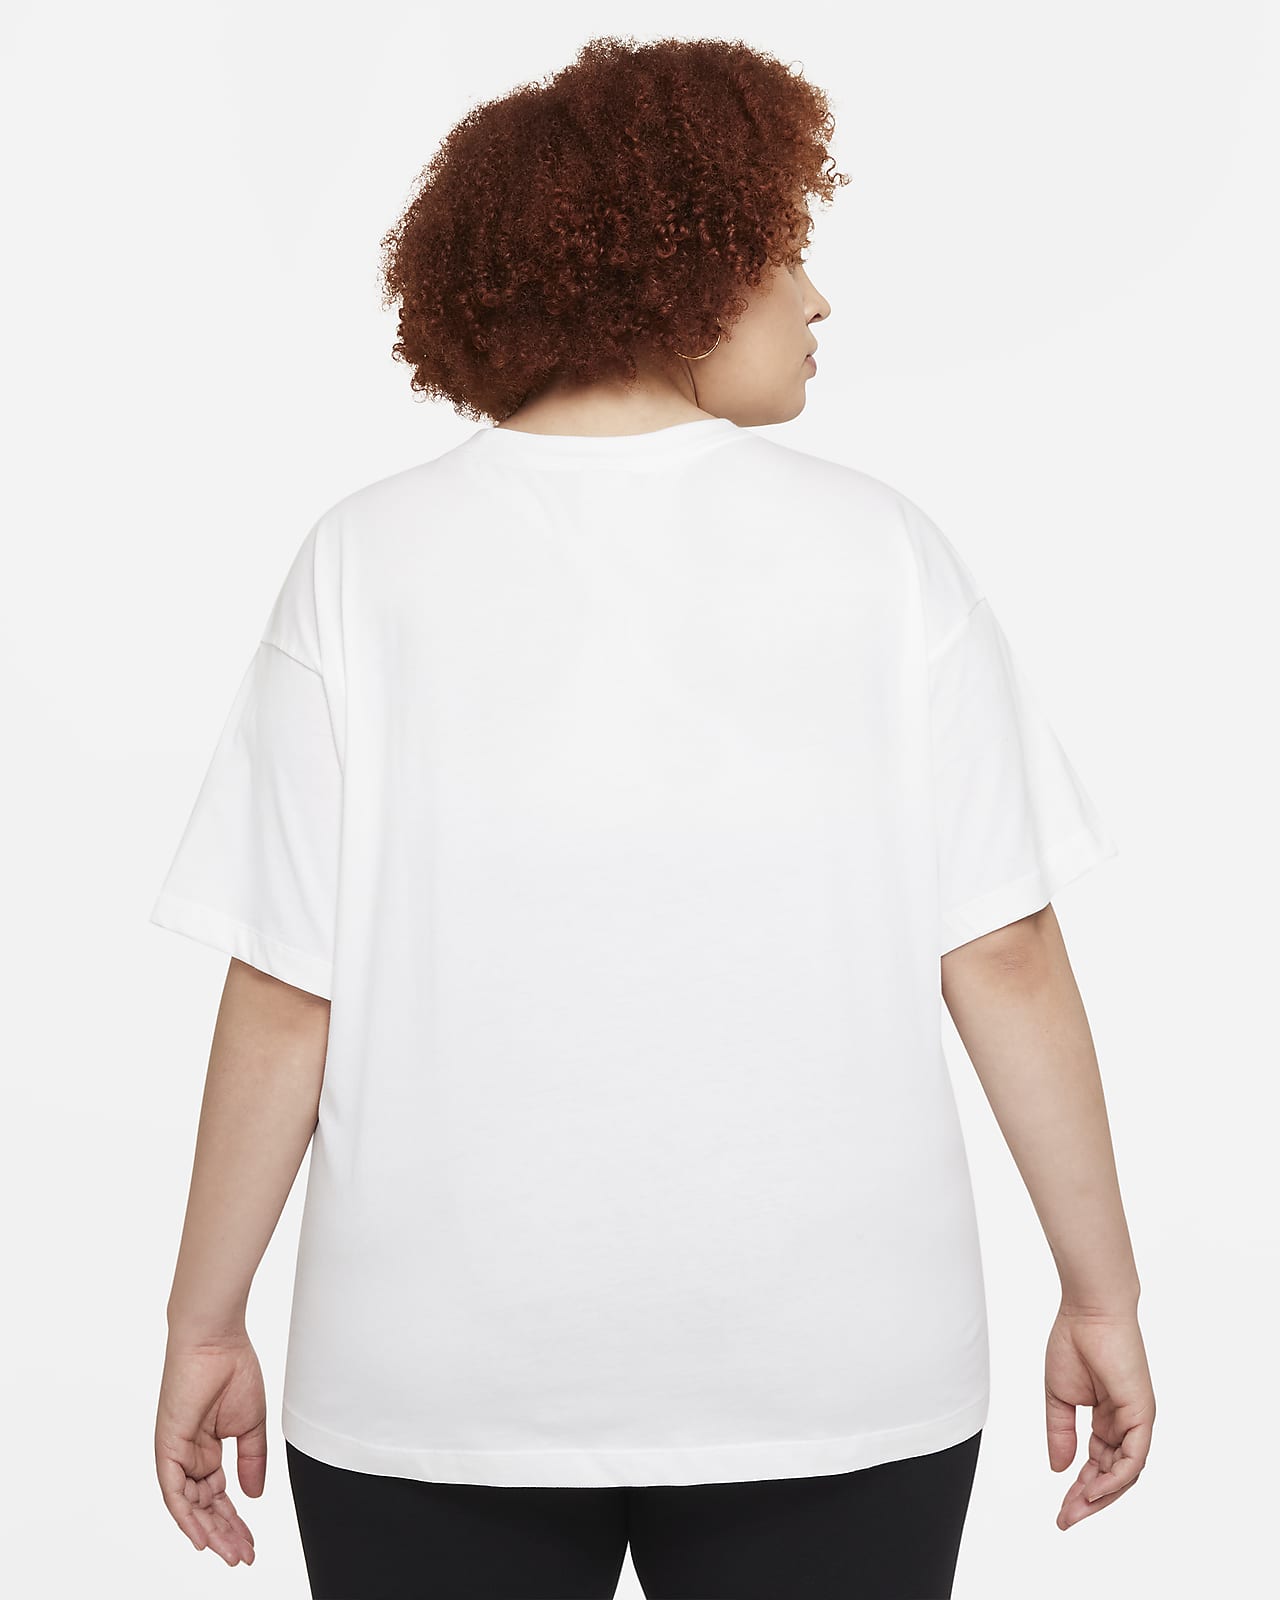 Nike Women's Sportswear Essential Oversized Short-Sleeve Top (Plus Size) -  Toby's Sports